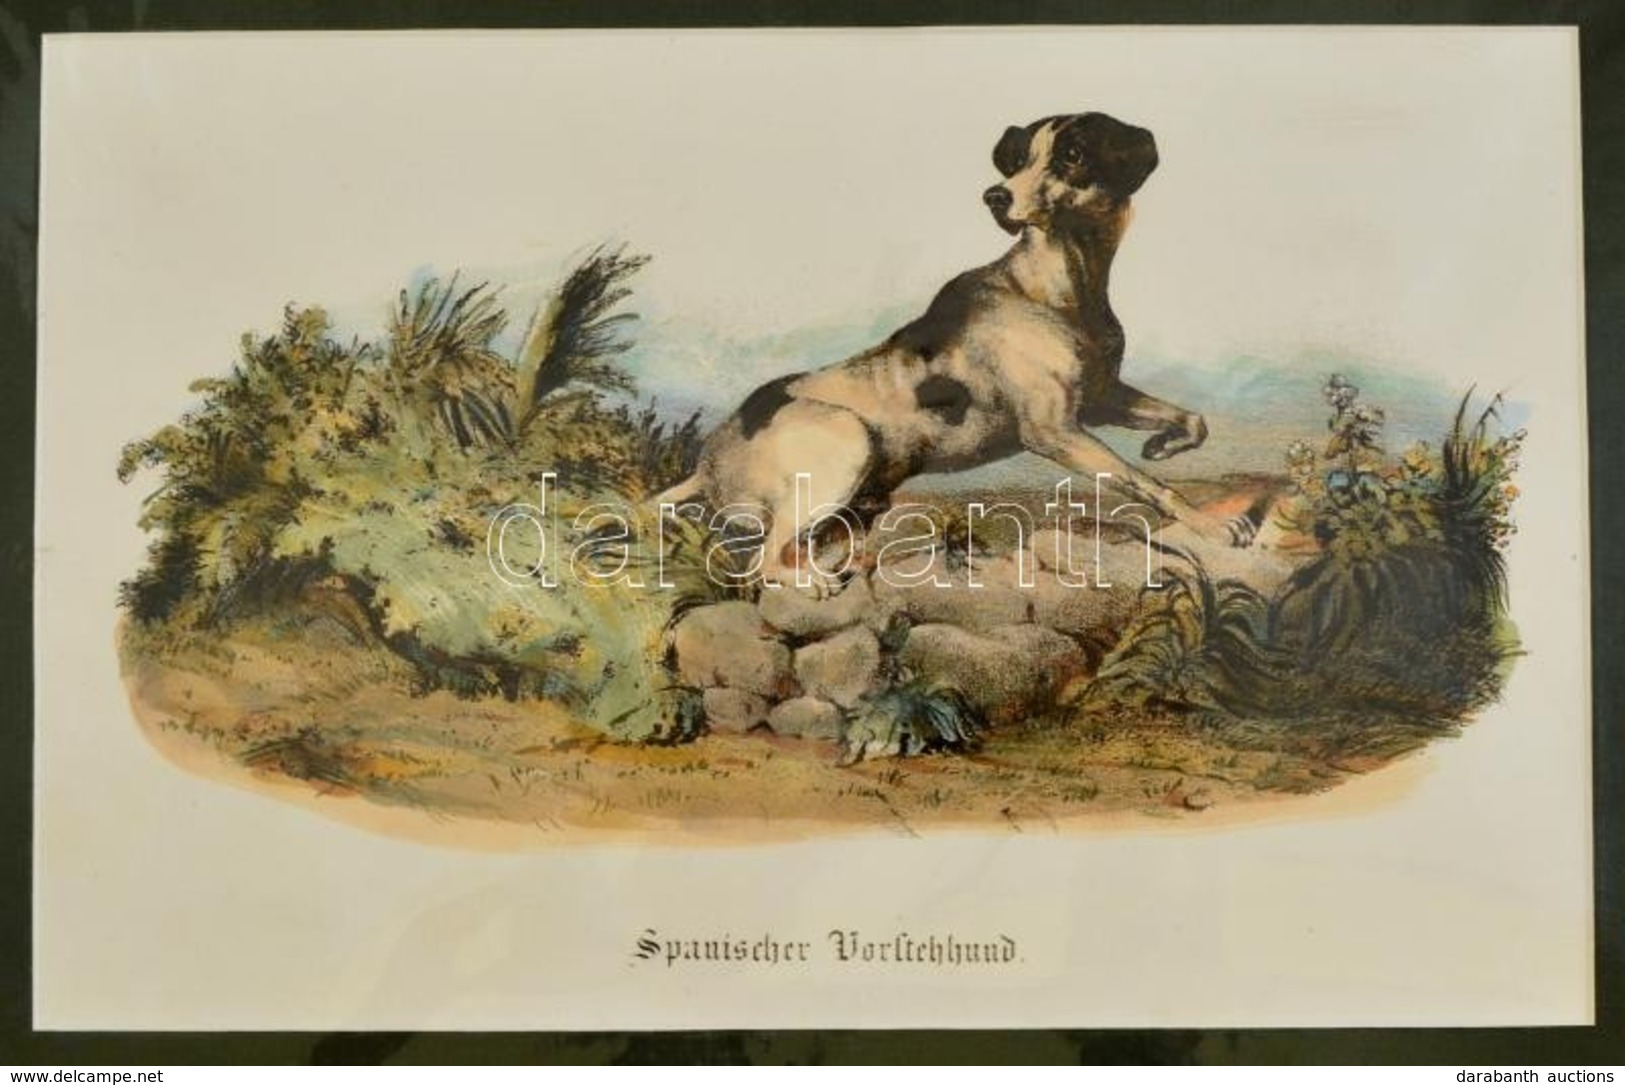 Cca 1850 Spanyol Vadaszkutyat Abrazolo Lithografia 28x18 Cm, Paszpartuban. / Spanish Dog Lithography. - Prints & Engravings